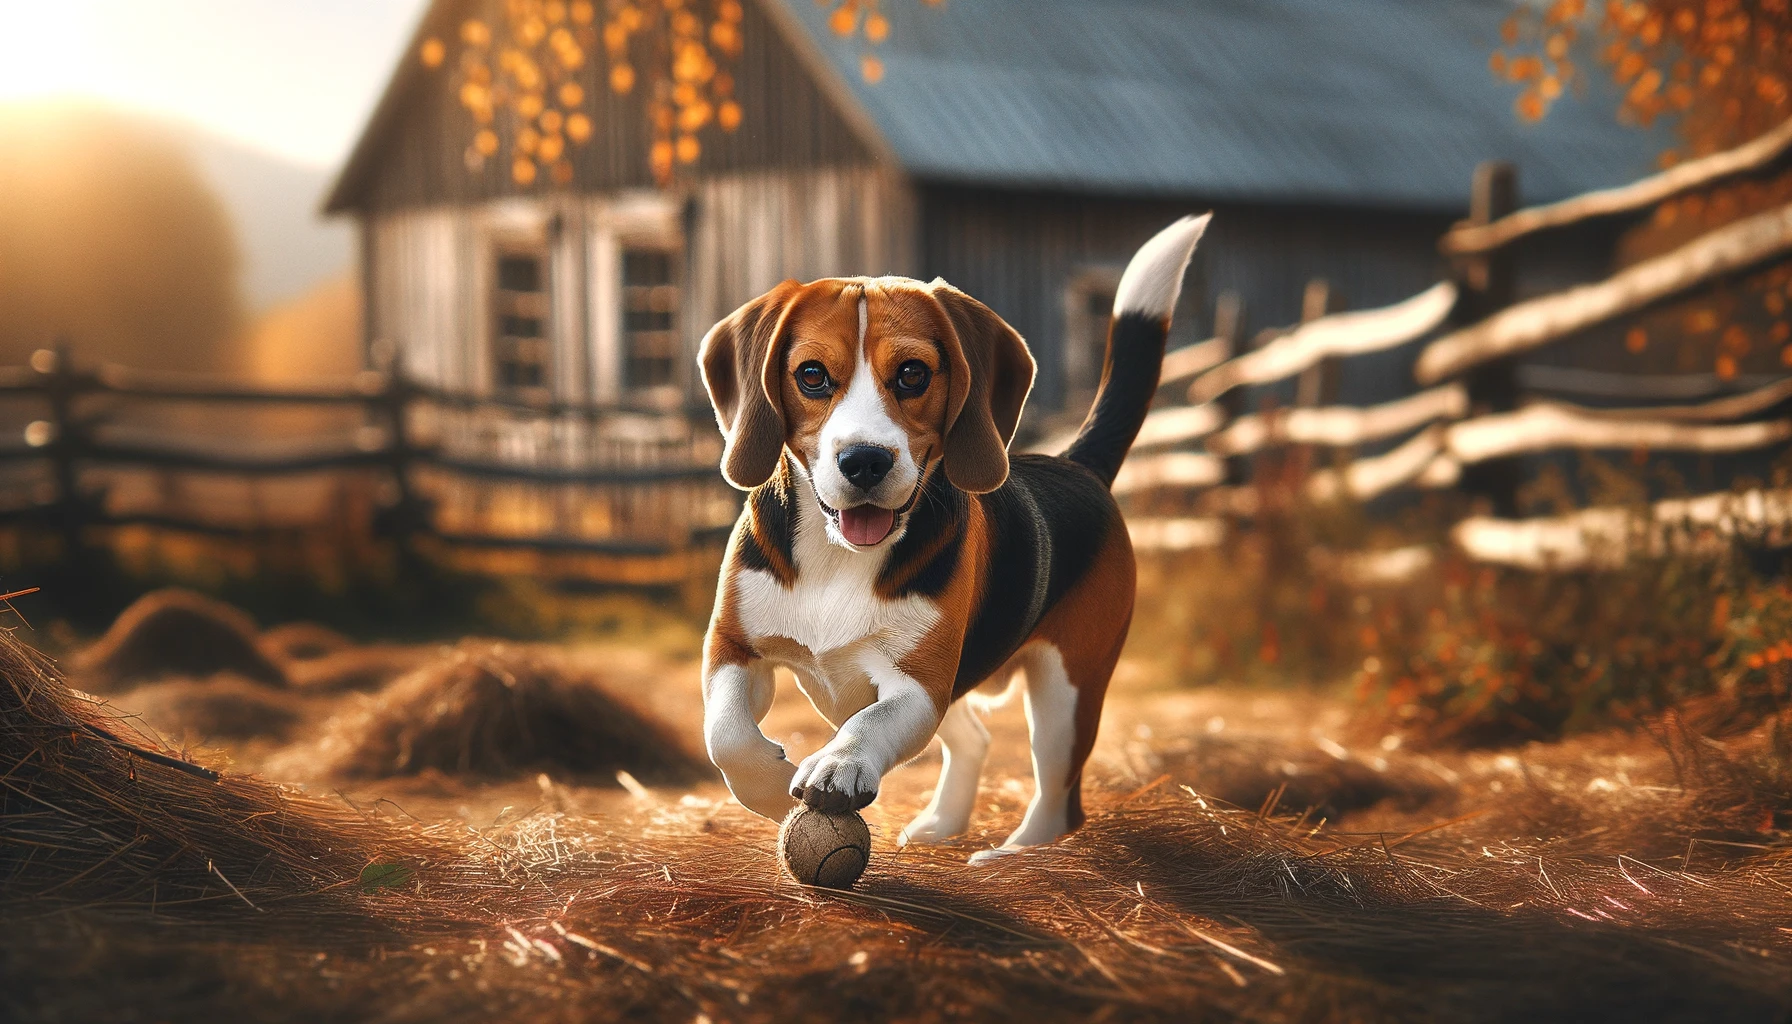 Beagle chasing a ball